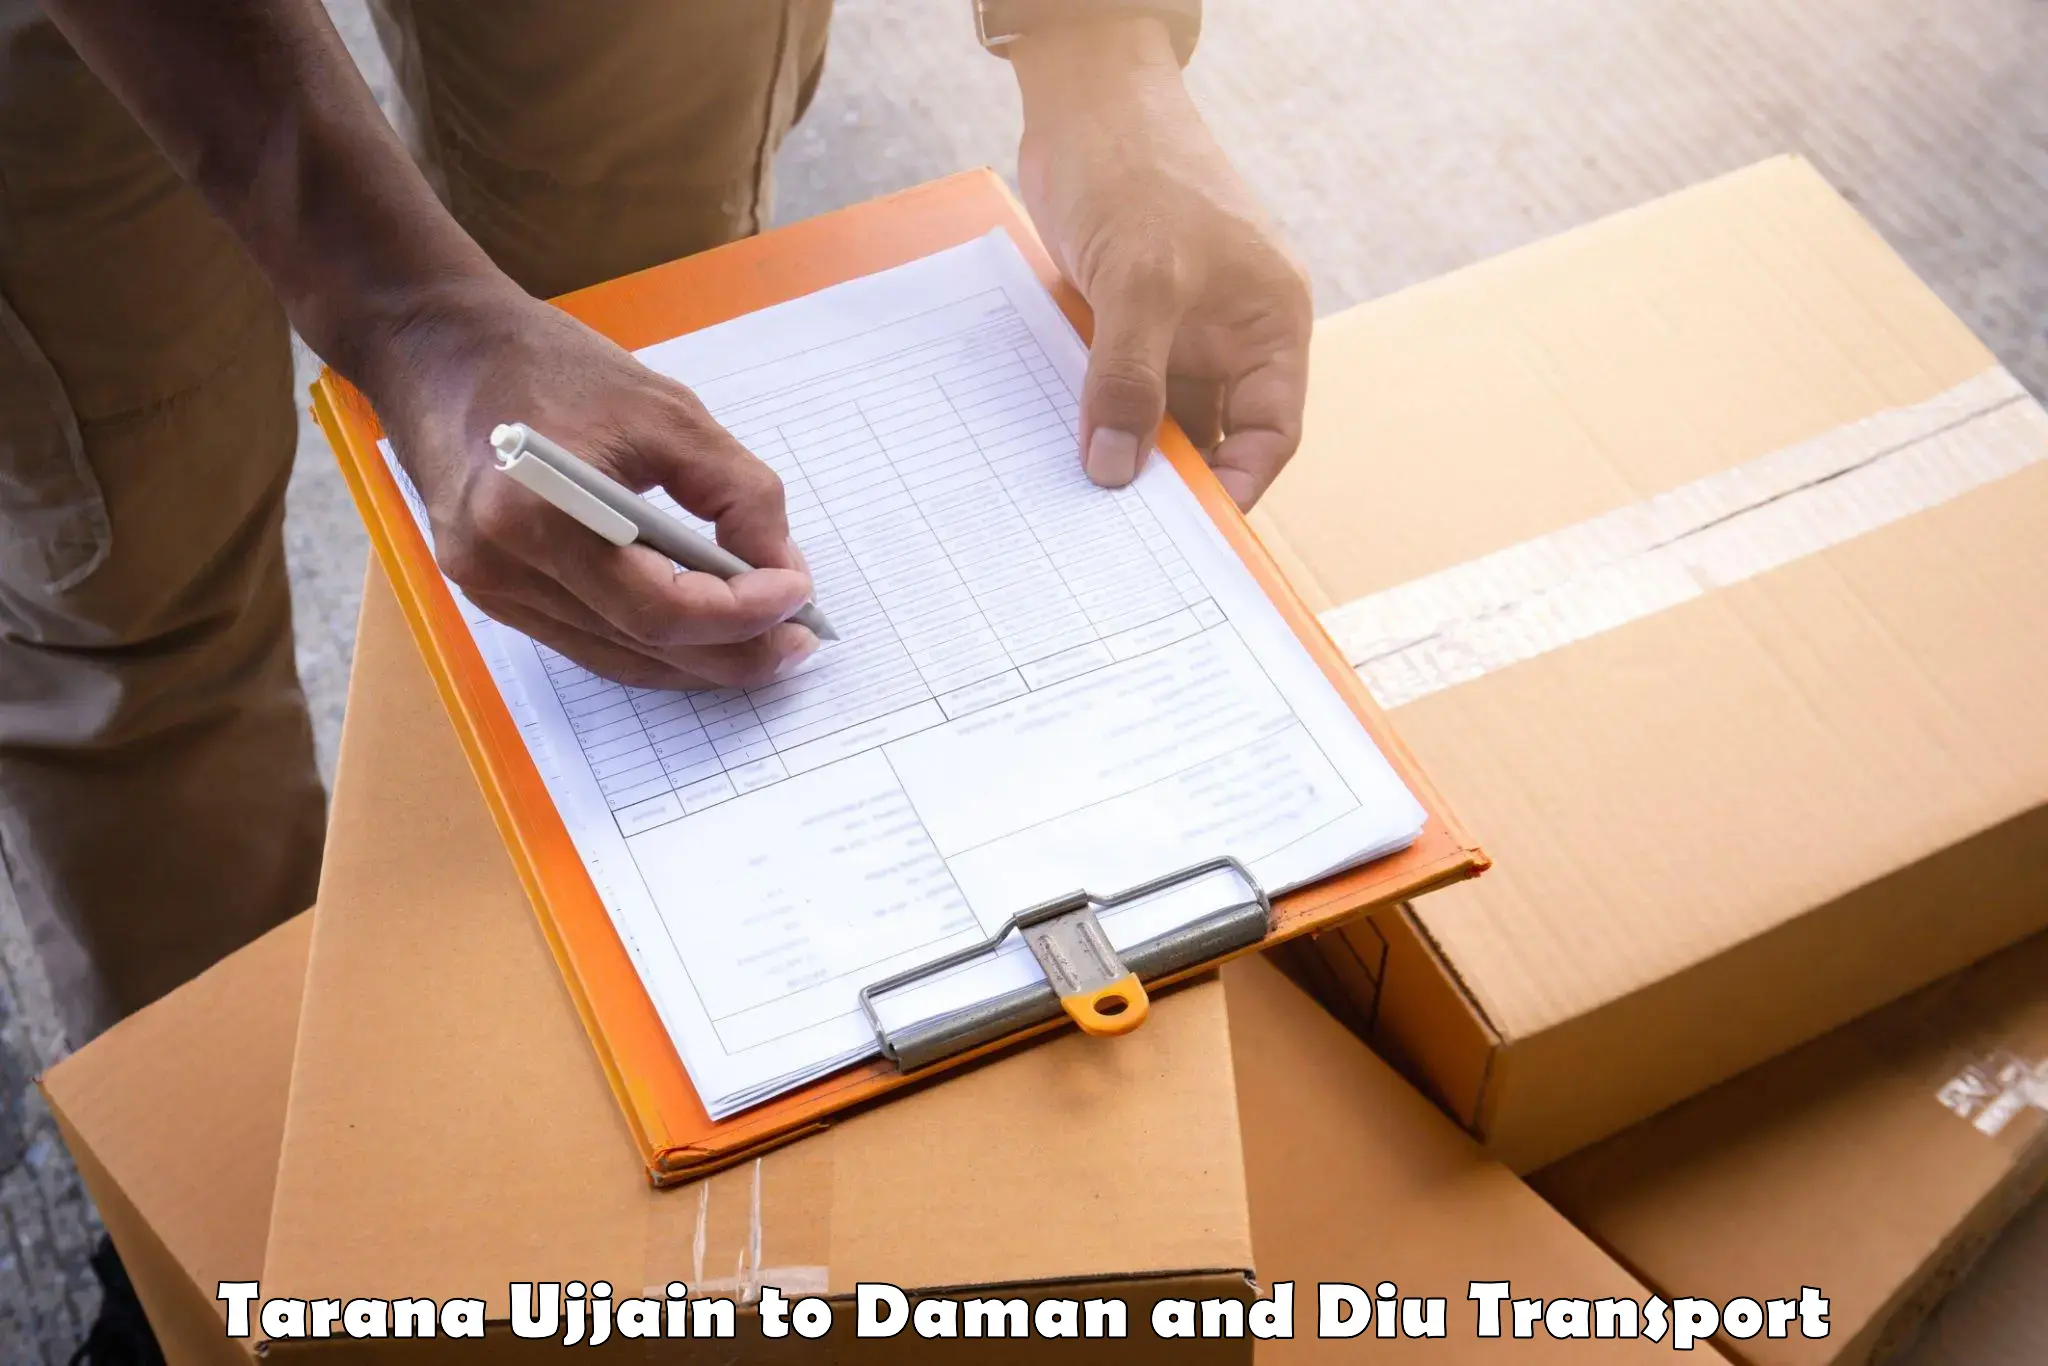 Transport shared services Tarana Ujjain to Daman and Diu